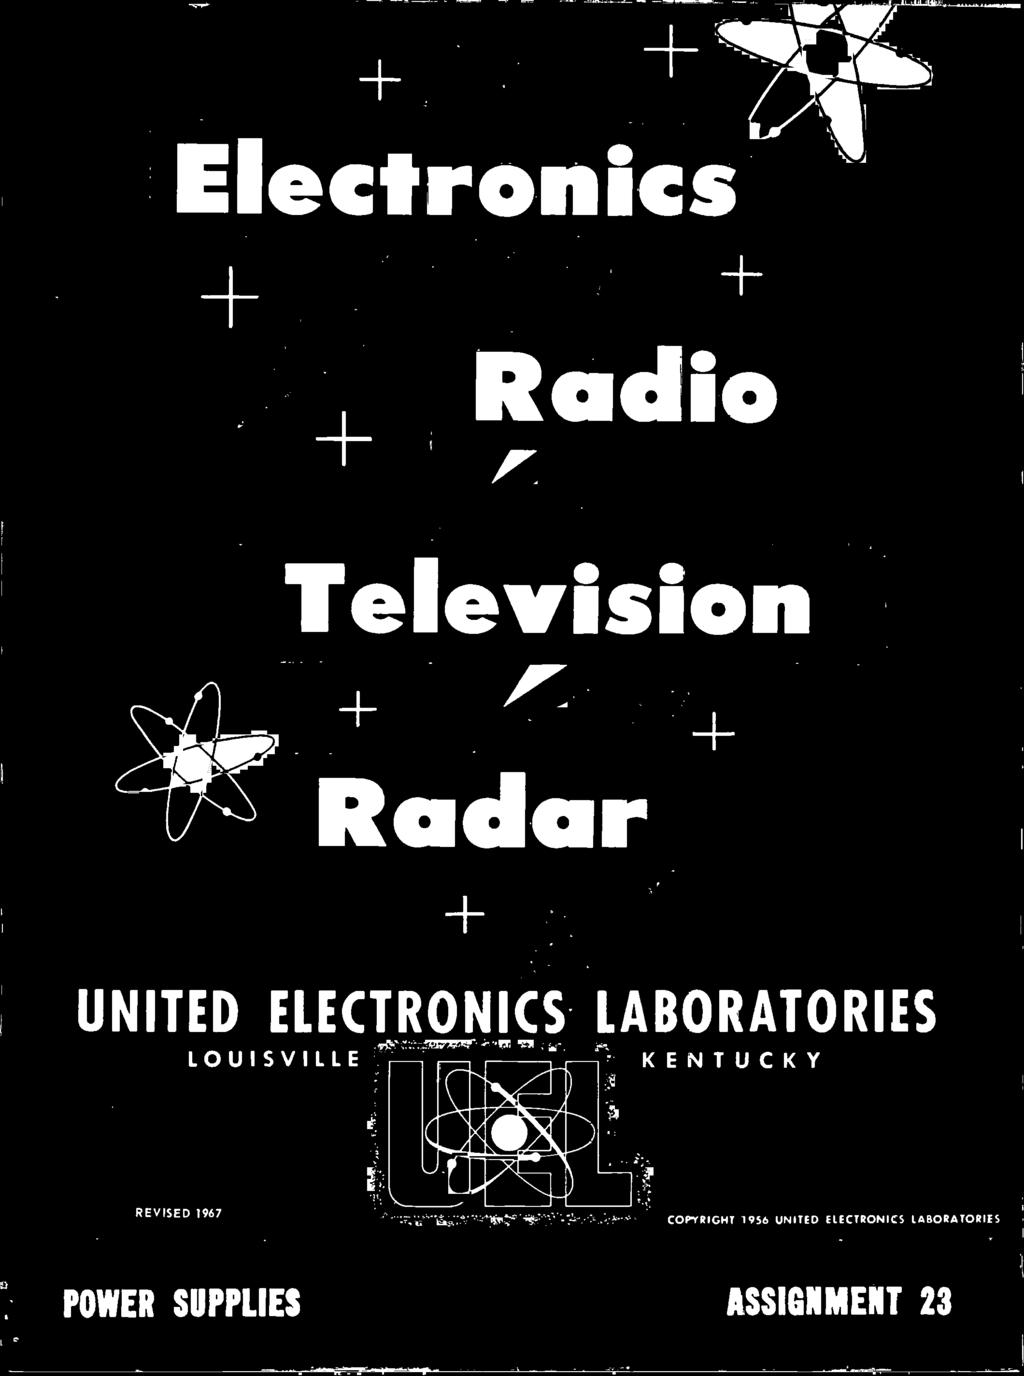 COPYRIGHT 1956 UNITED ELECTRONICS